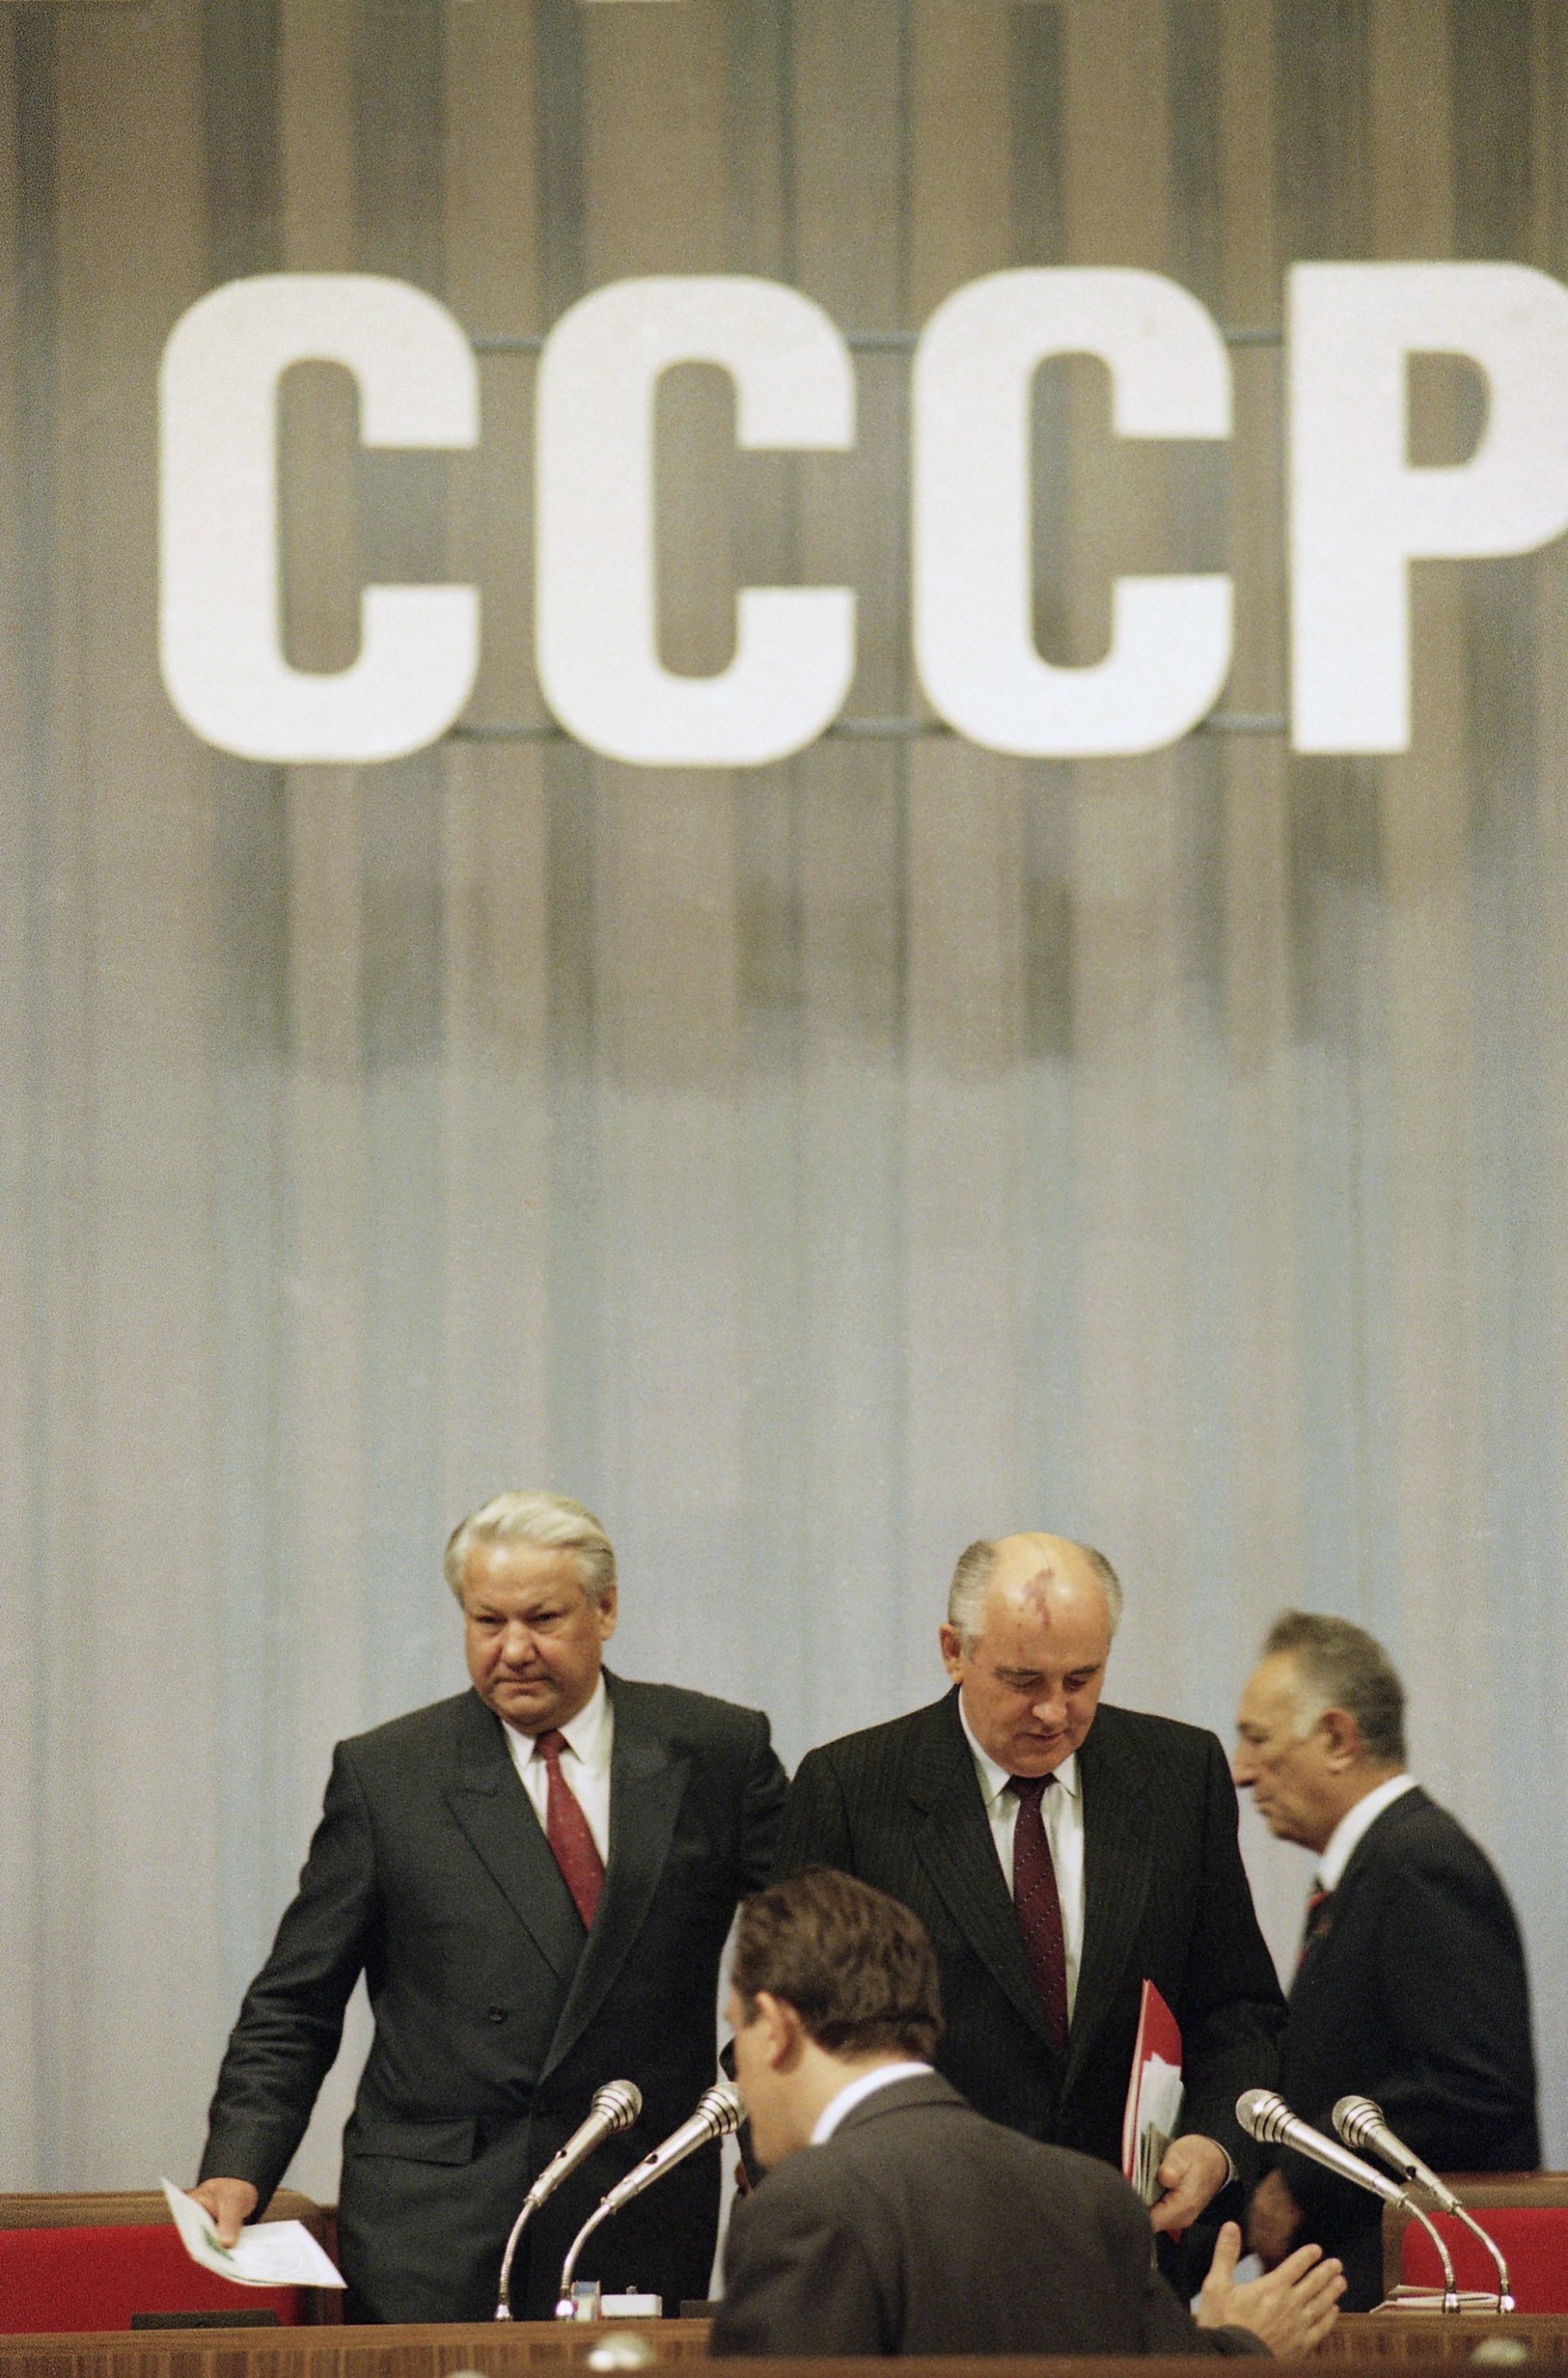 Само няколко дни след разпадането на СССР Борис Елцин решава да започне програма за радикални икономически реформи